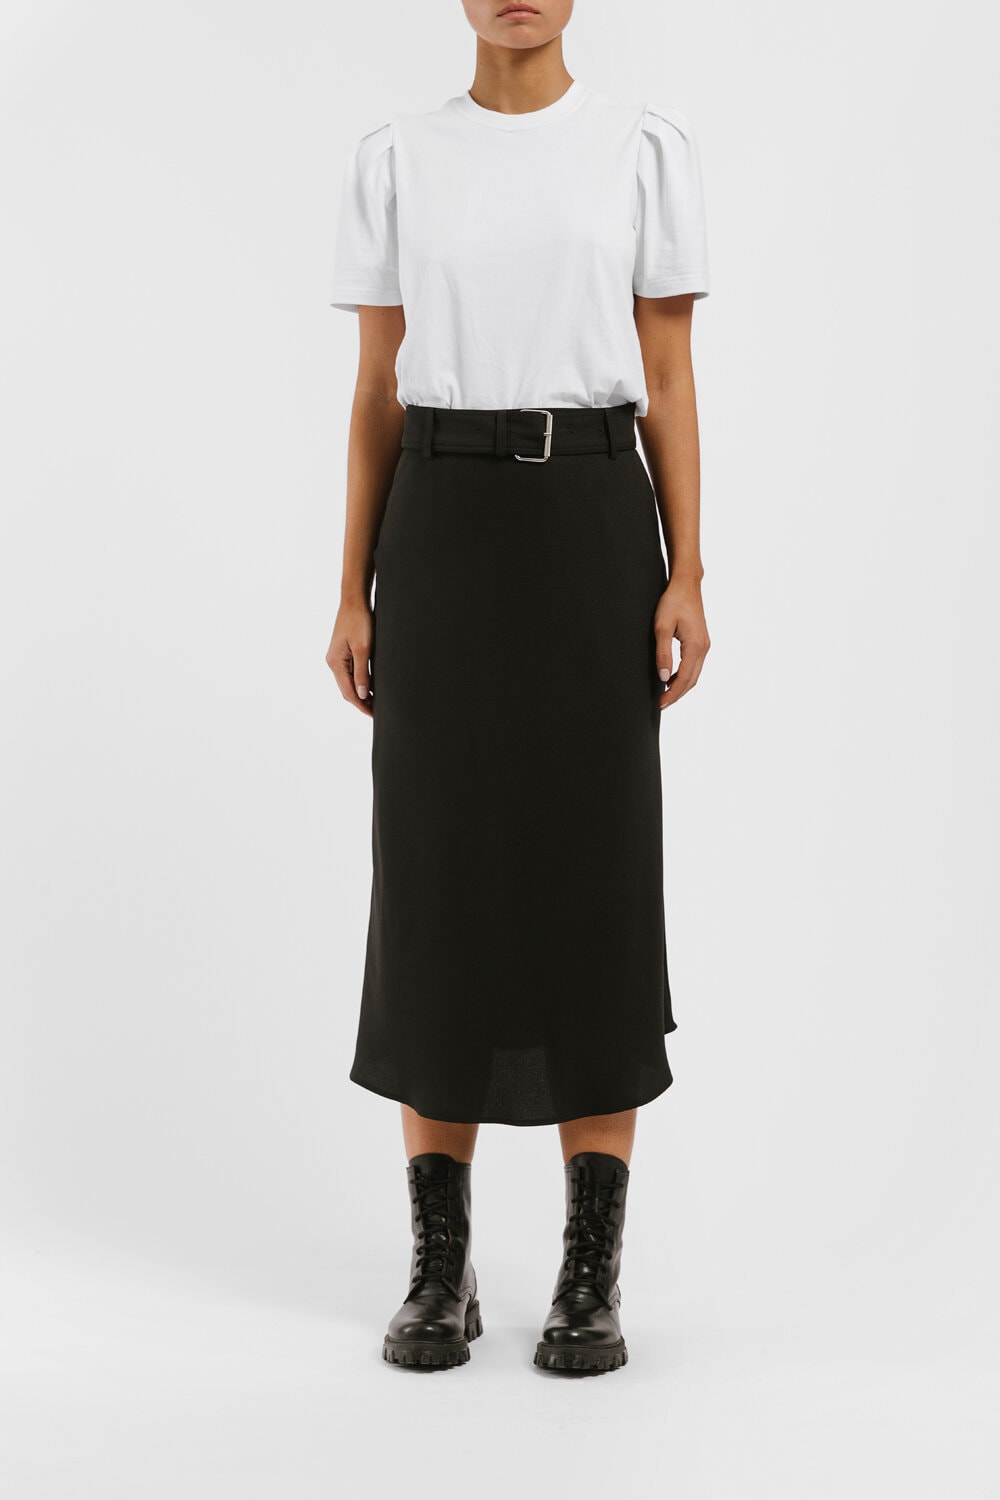 Alannah Skirt